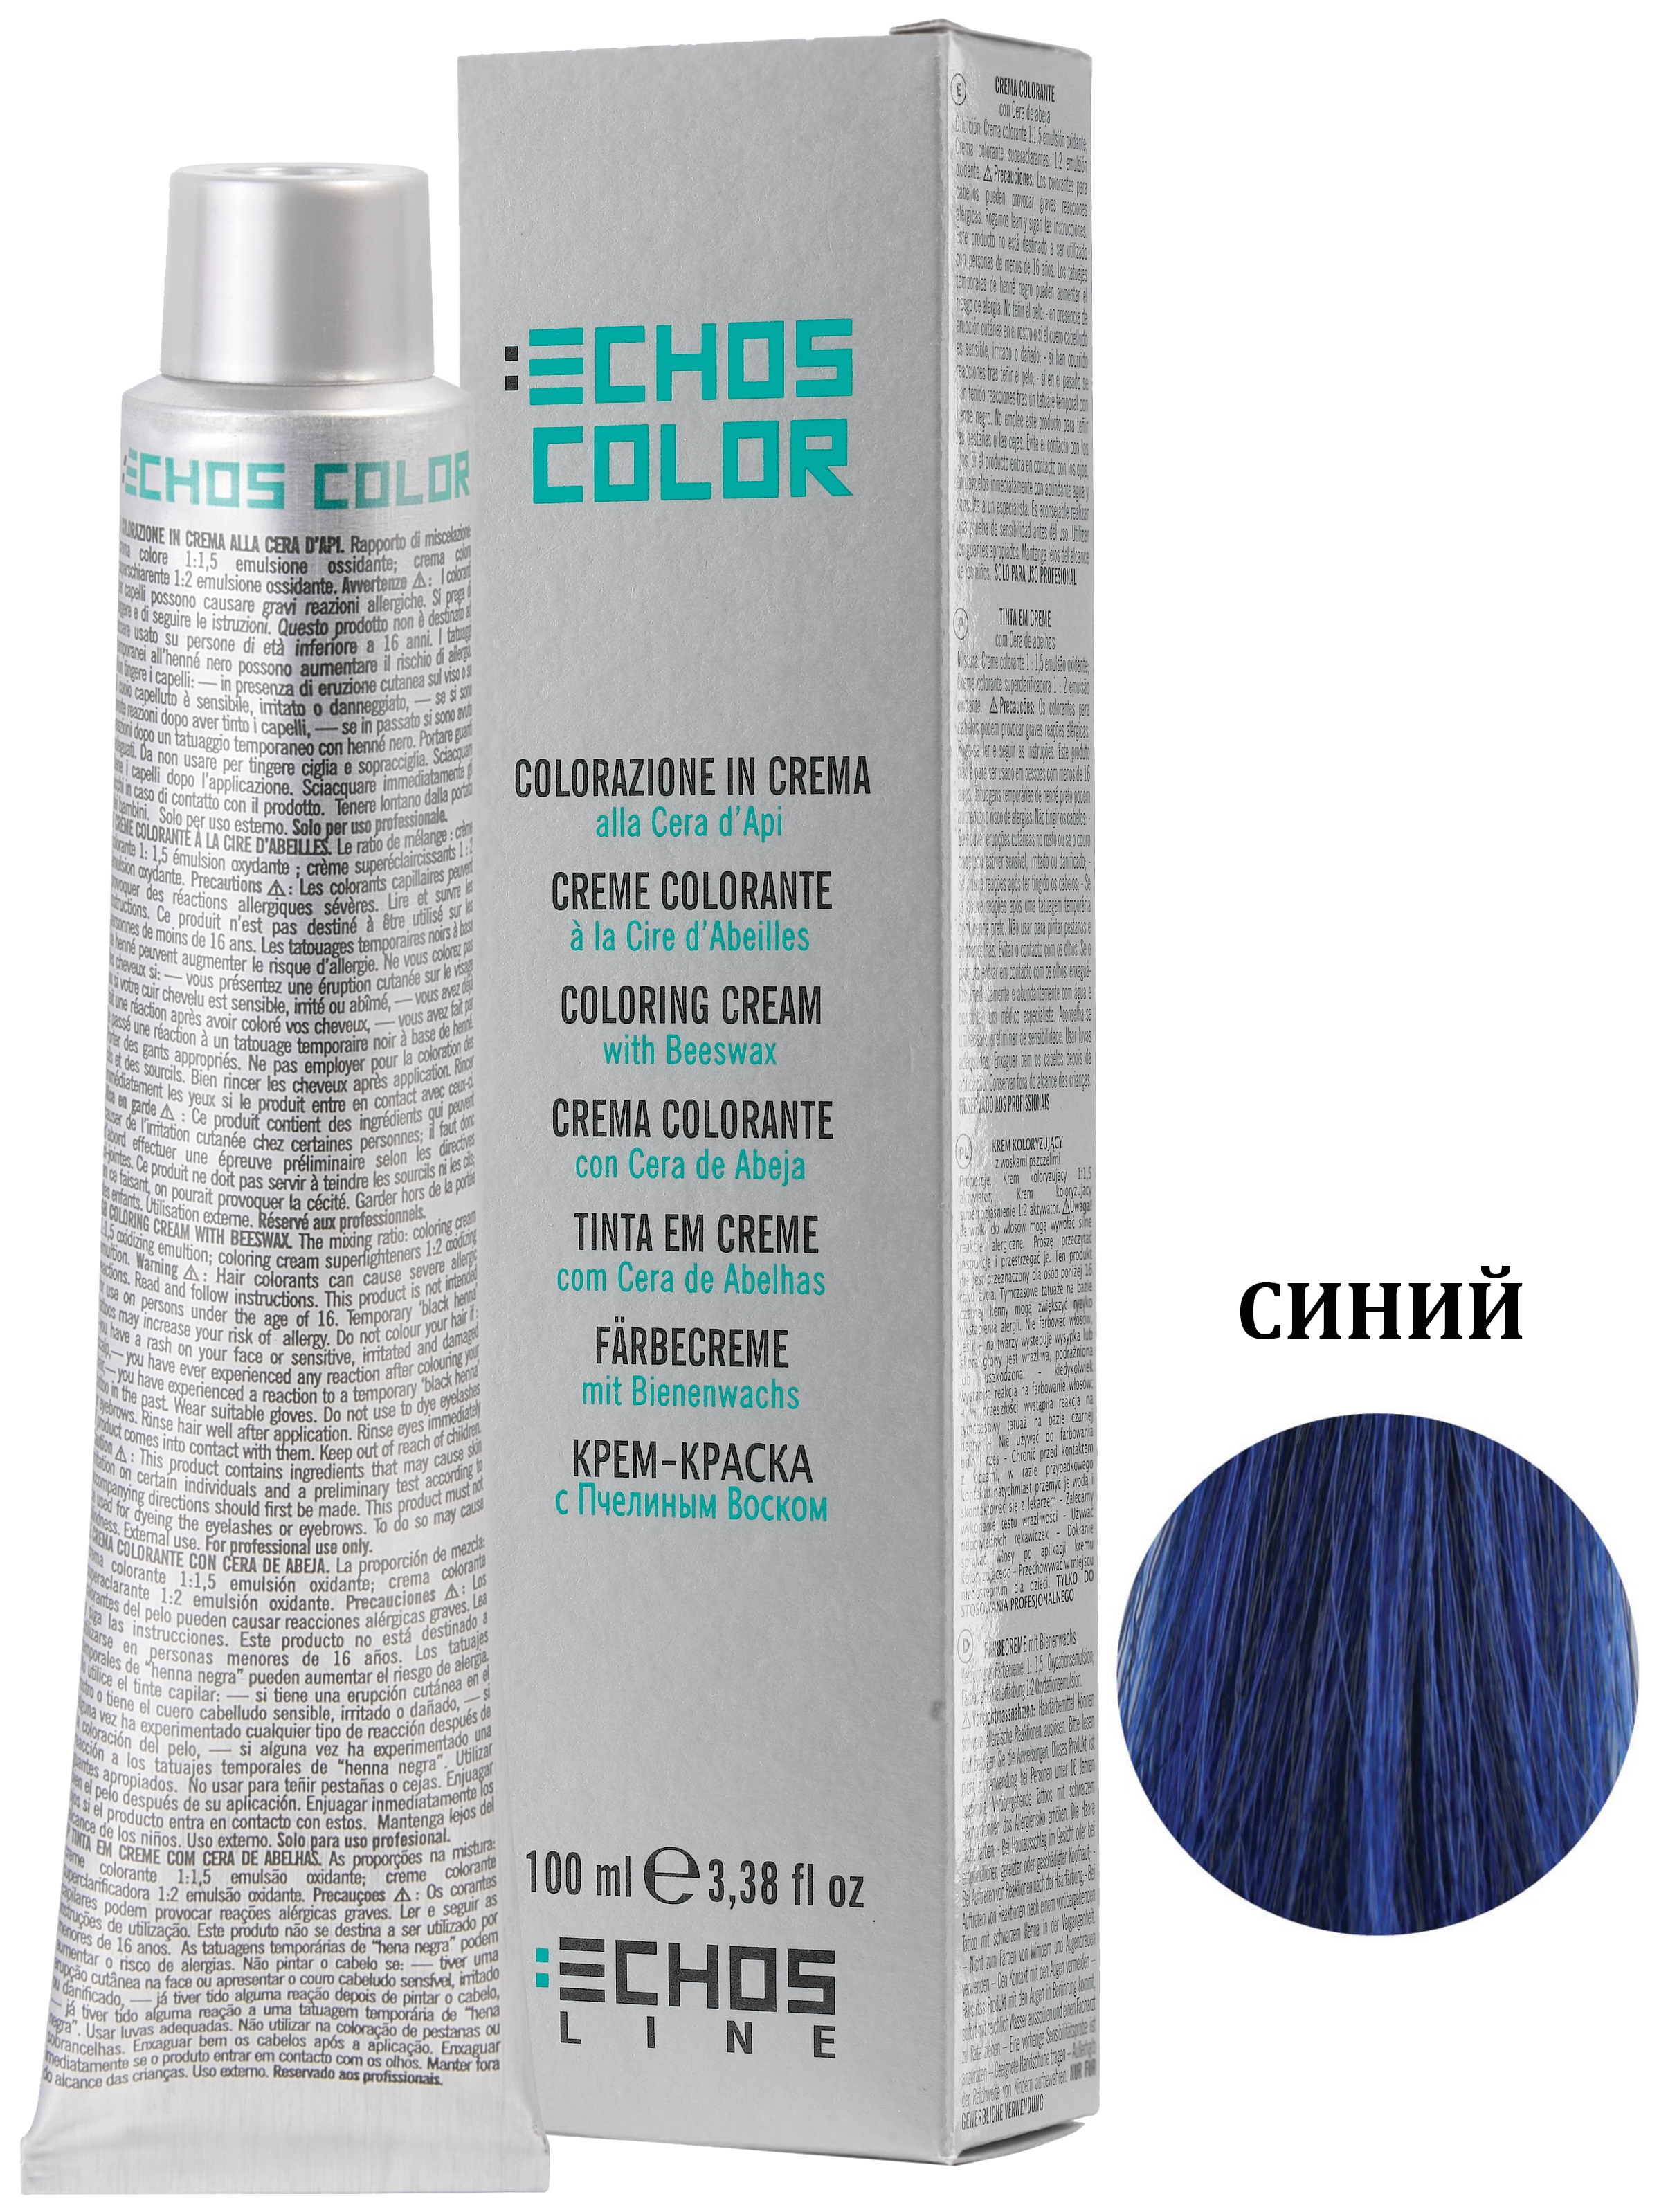 Купить Крем-краска ECHOSCOLOR для окрашивания волос ECHOS LINE синий корректор 100 мл